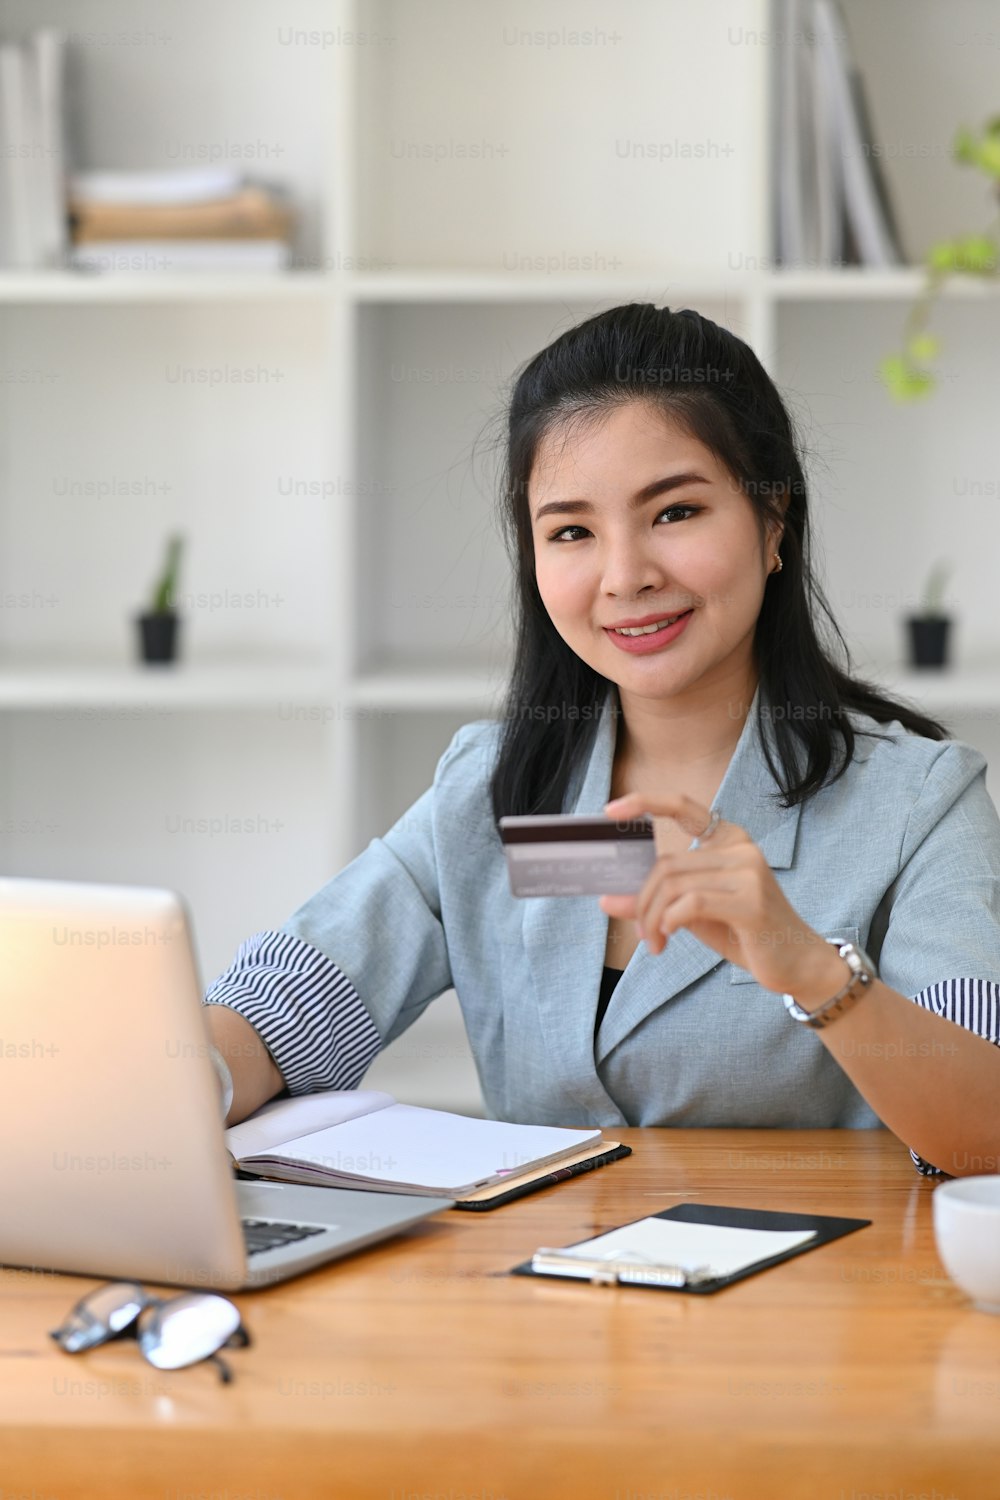 Porträt junge asiatische Frau, die Kreditkarte locht und Computer-Laptop für die Online-Zahlung verwendet.